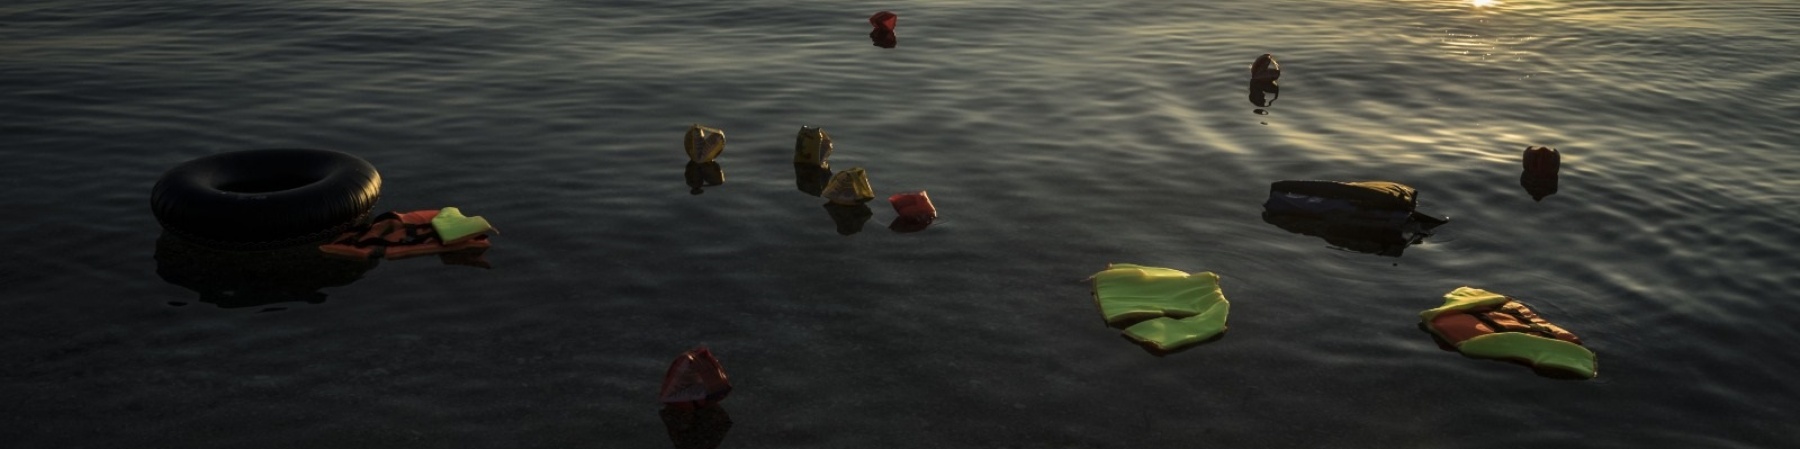 resti di giubbotti salvagente e gommoni galleggiano in mare al tramonto